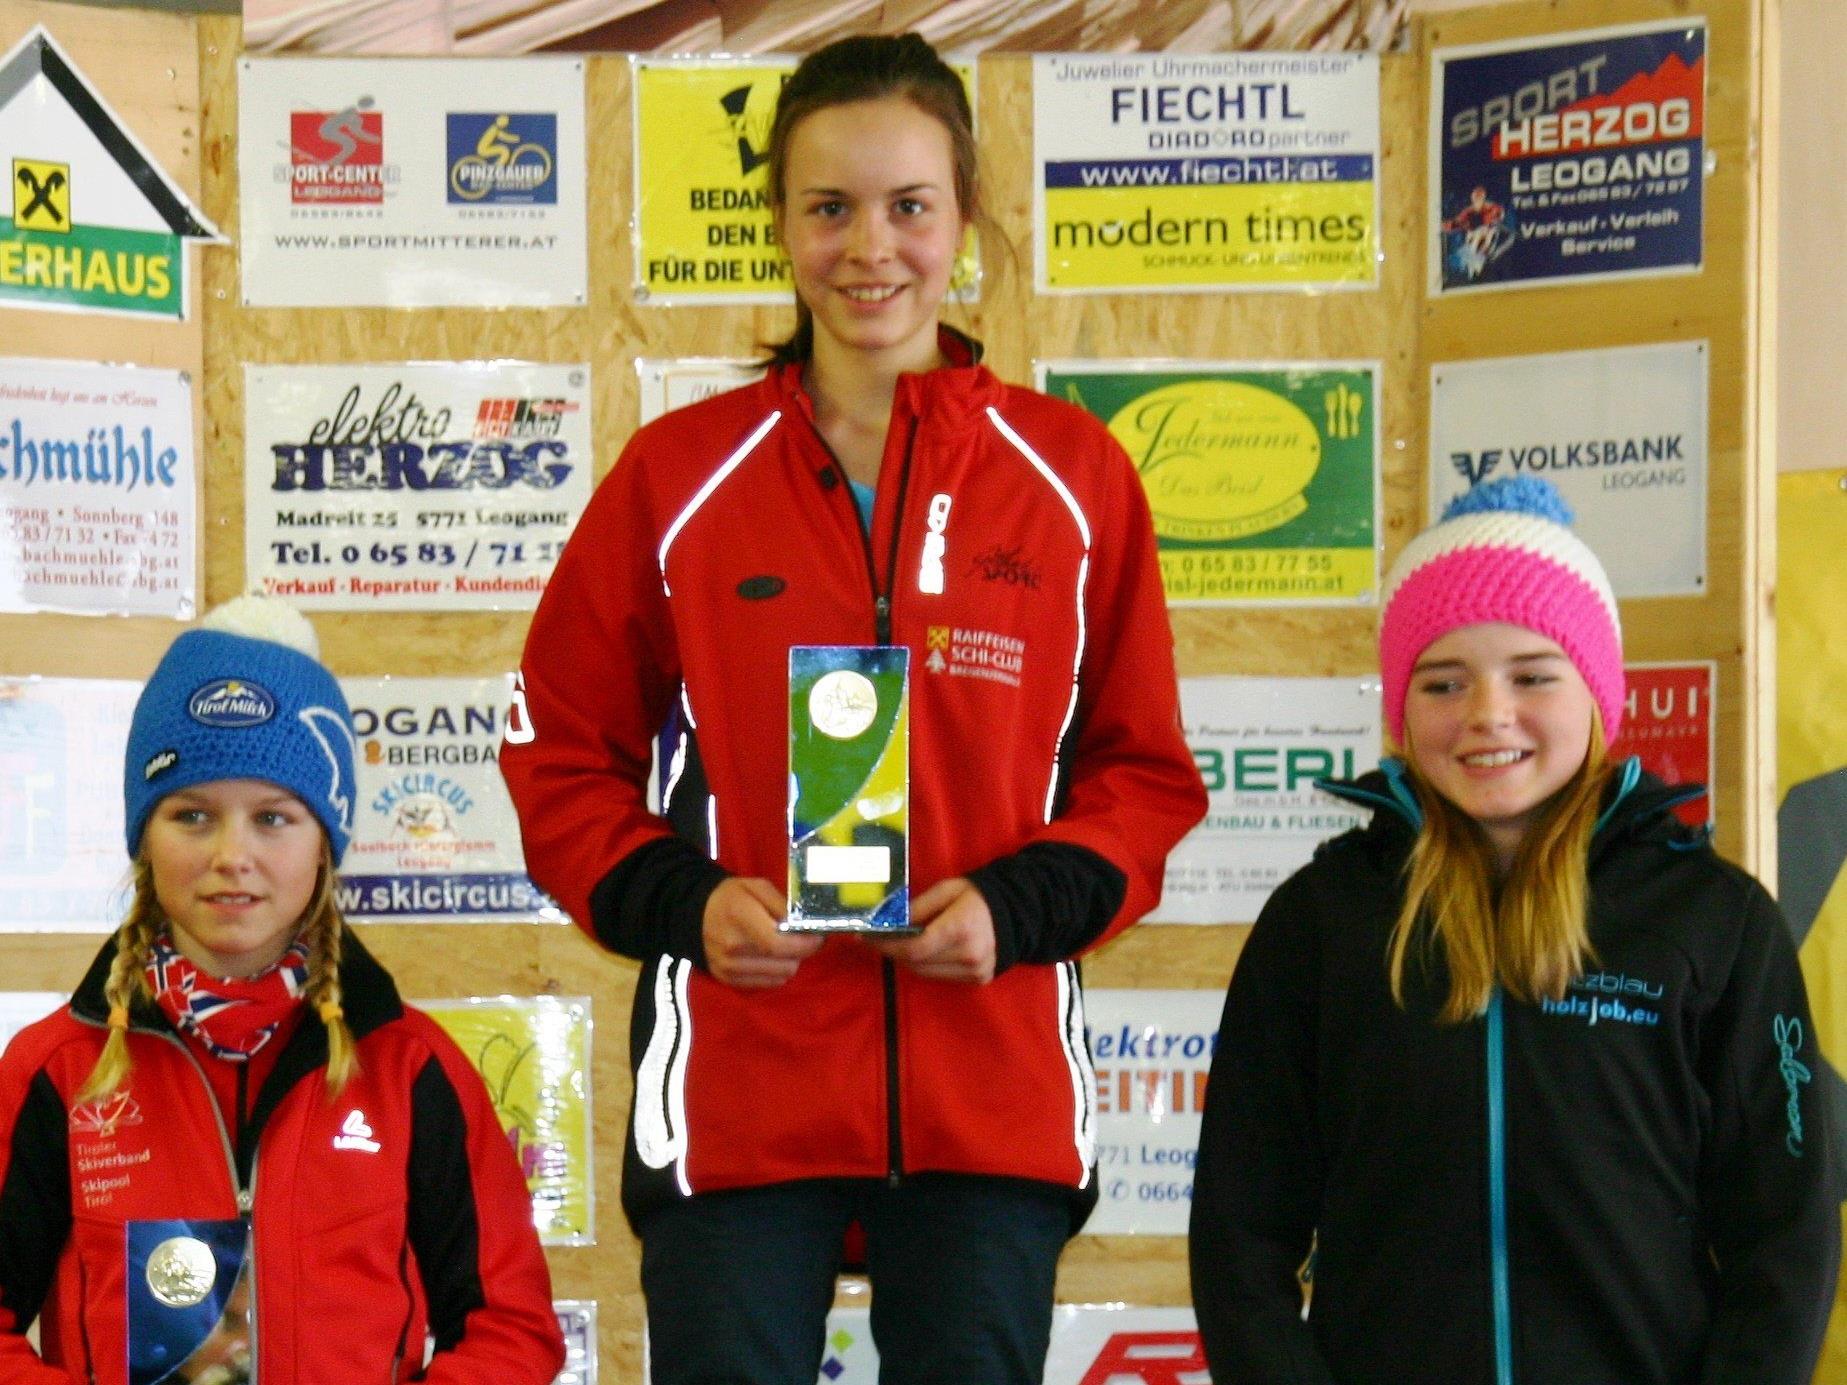 Platz eins und zwei für Magdalena Beer bei den letzten Wettkämpfen, die Youngsterin ist in Form.